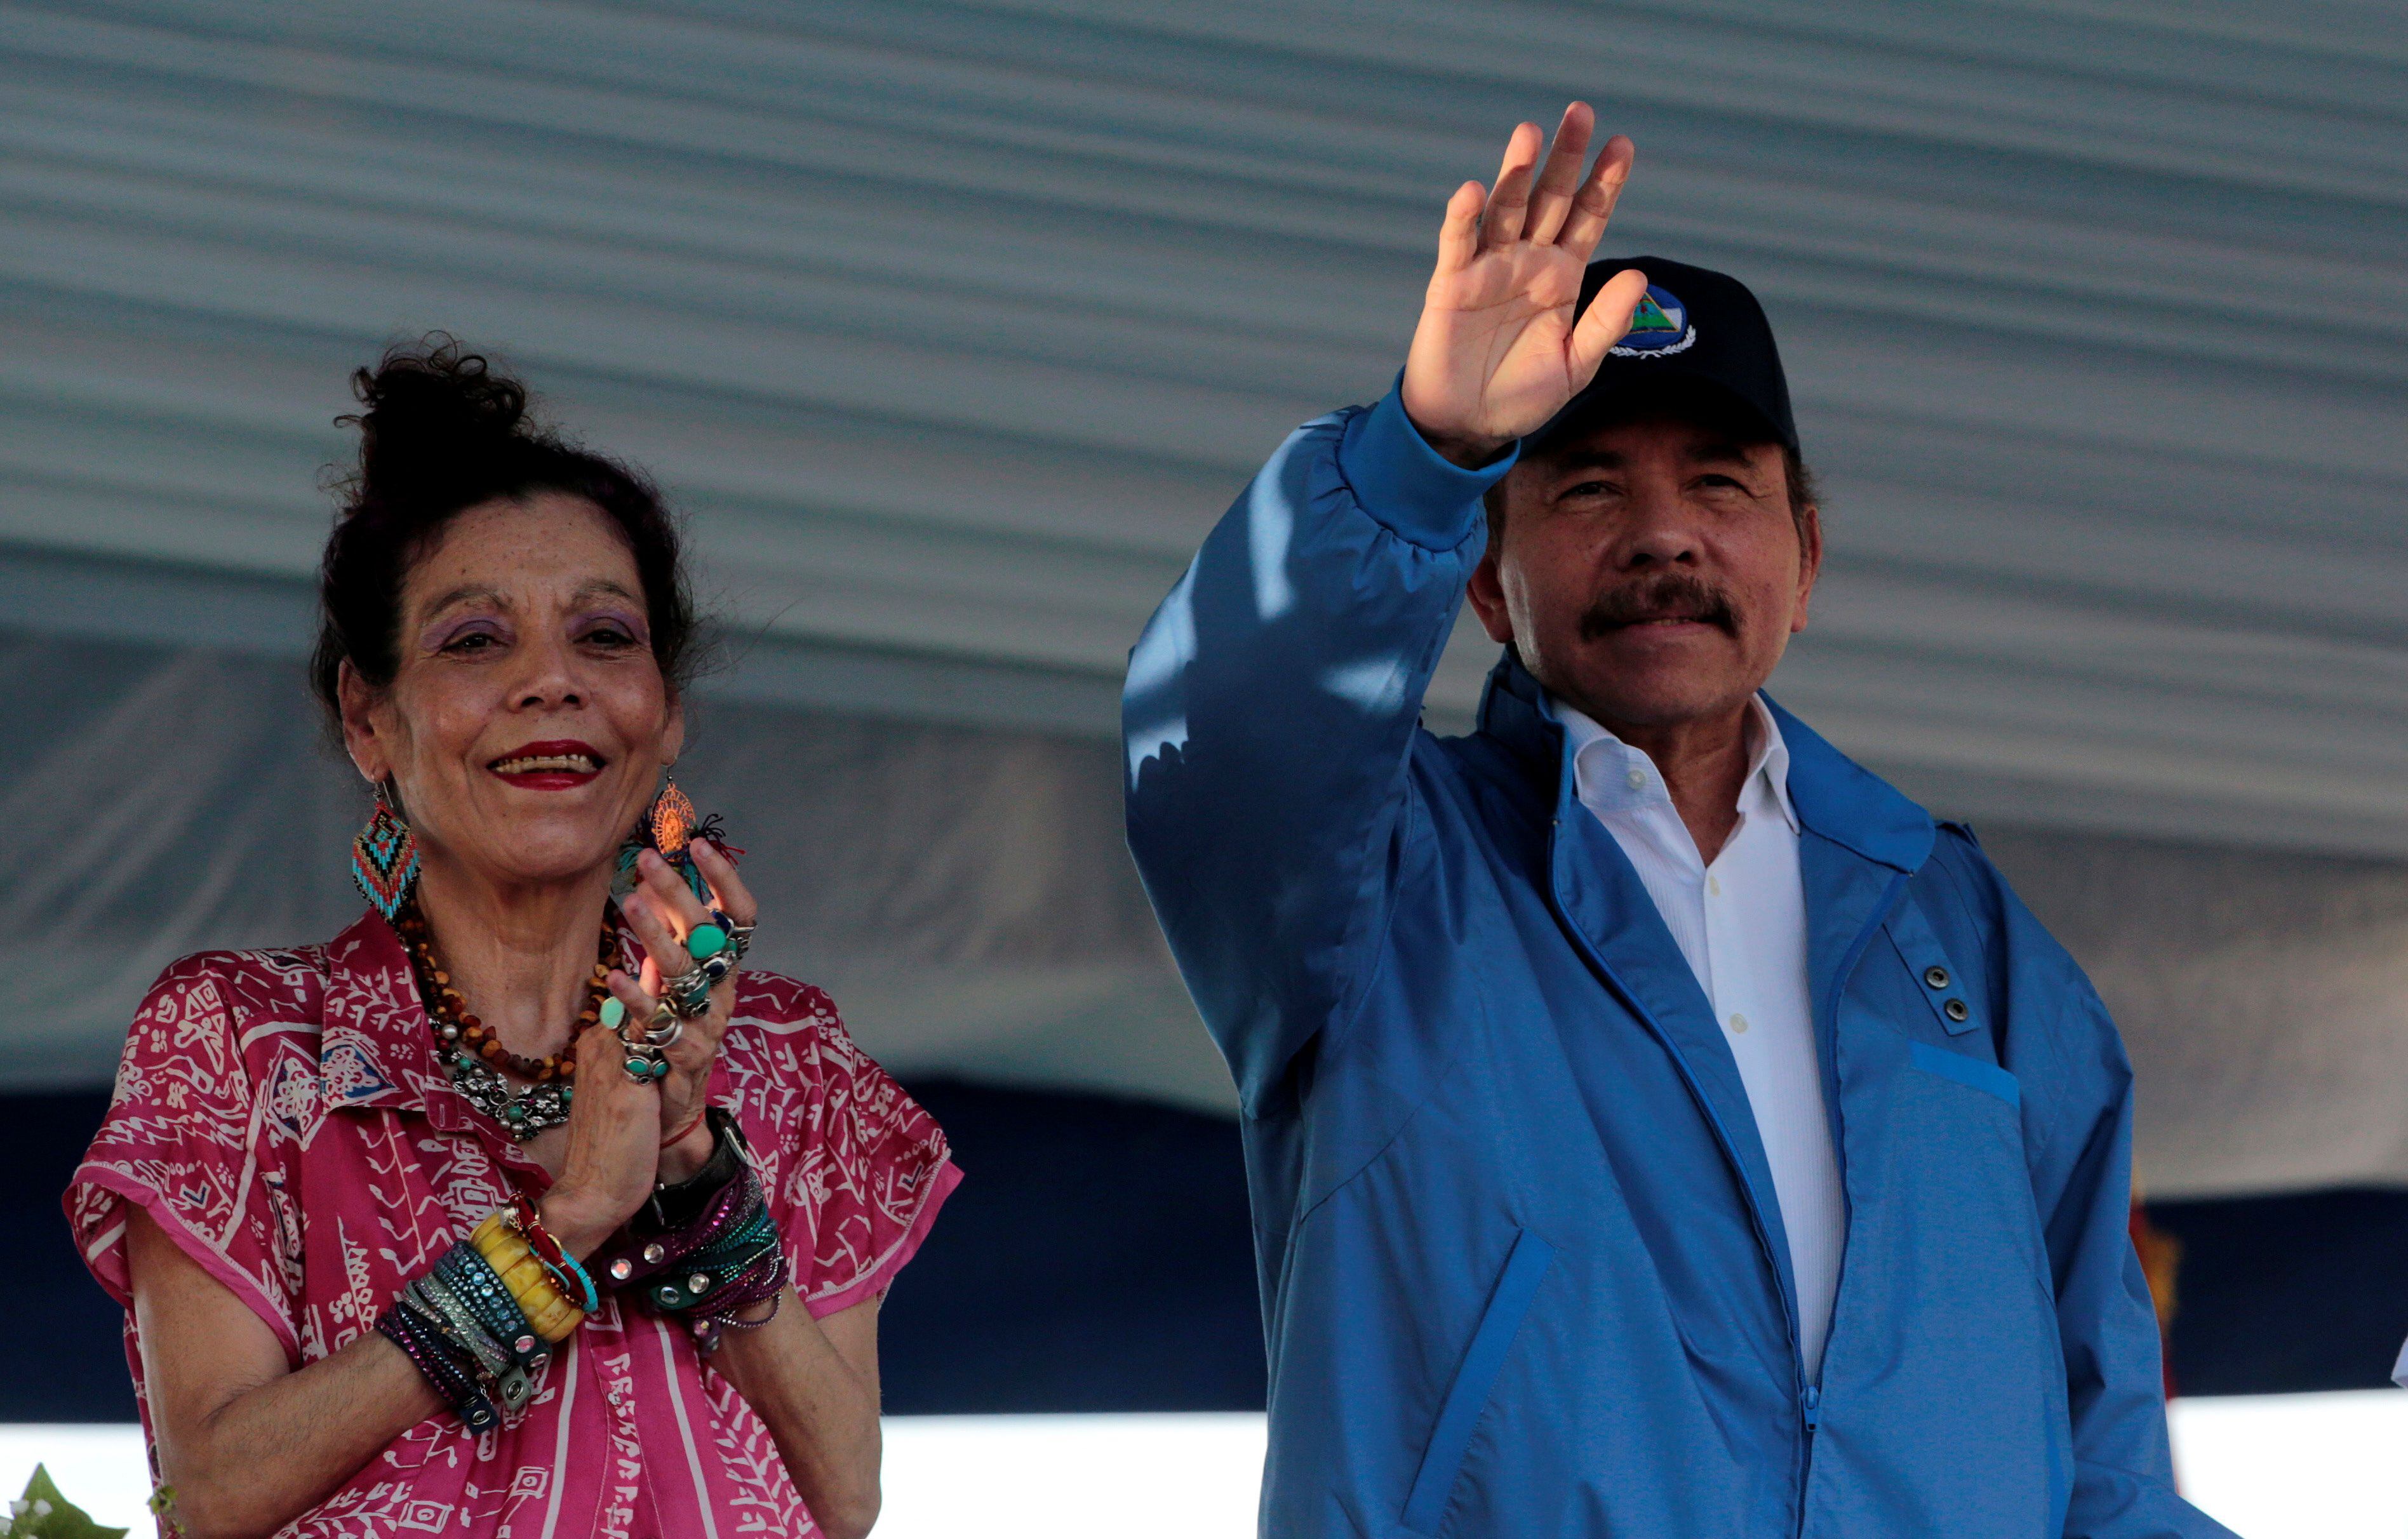 Daniel Ortega y Rosario Murillo, presidente y vicepresidenta de Nicaragua (REUTERS/Oswaldo Rivas)